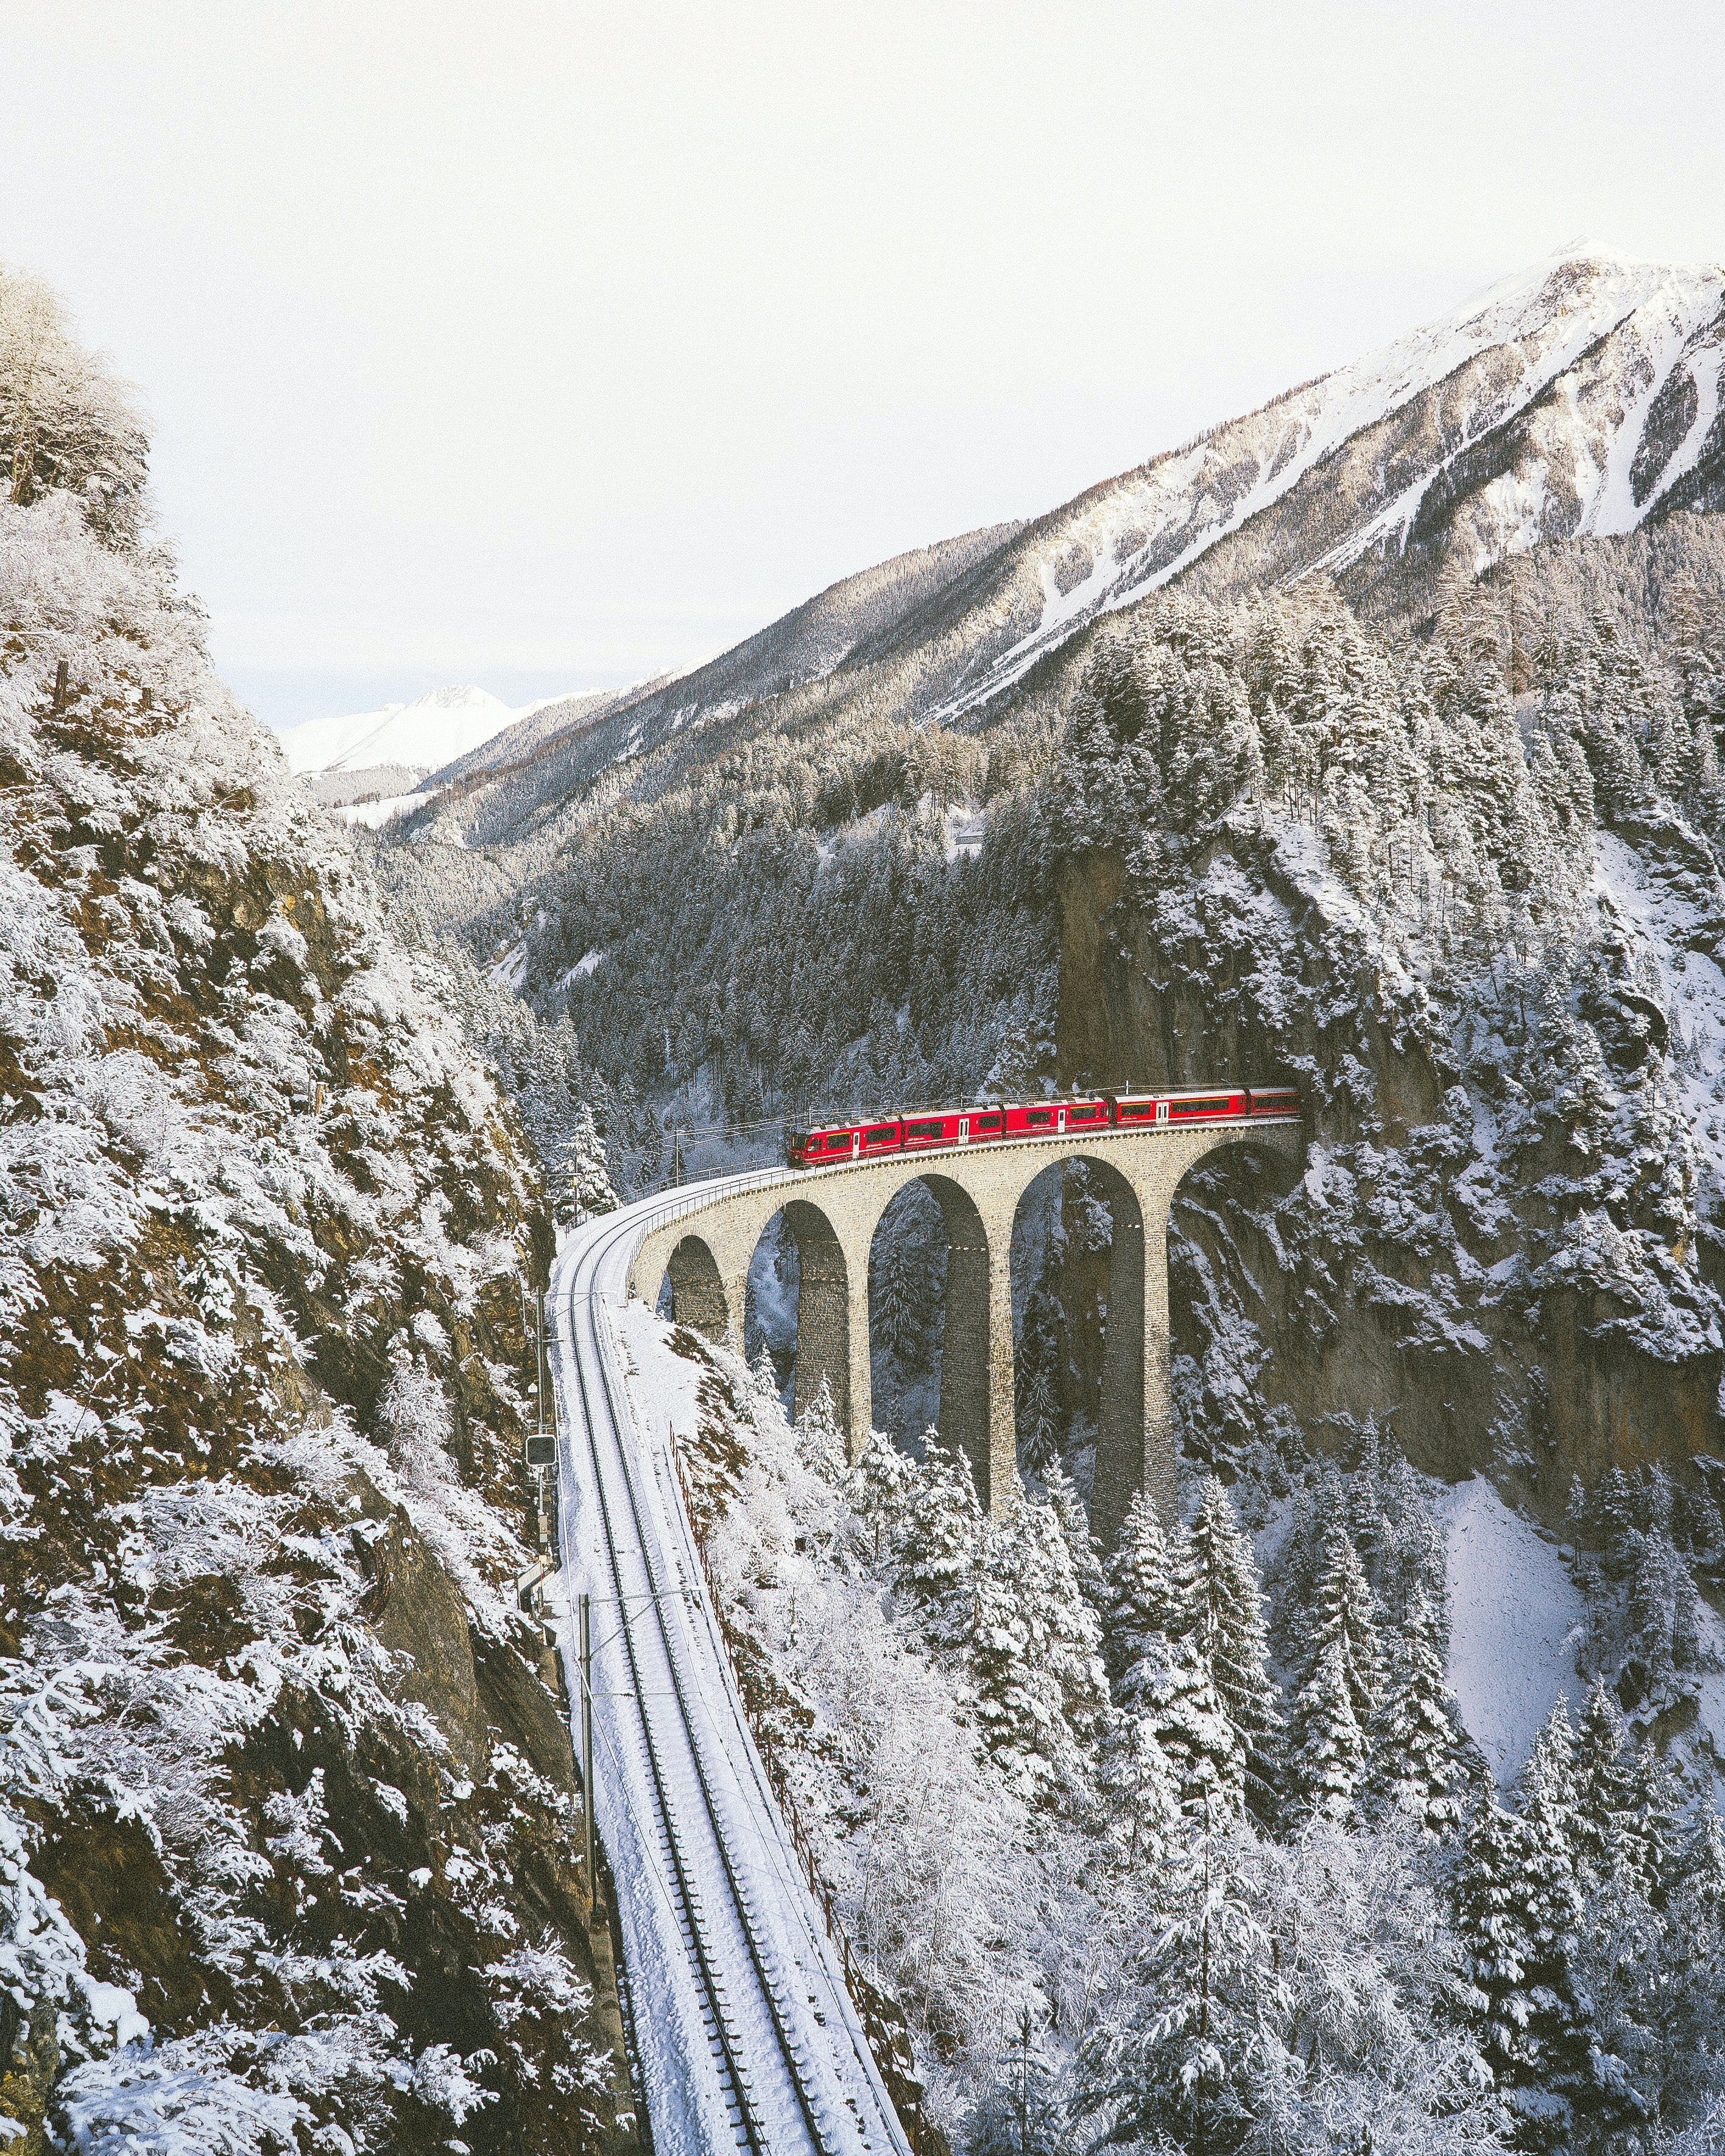 Schweizer Landschaft im Schnee mit einem Zug, der über den Viadukt inmitten der Berge fährt. Foto von Johannes Hofmann